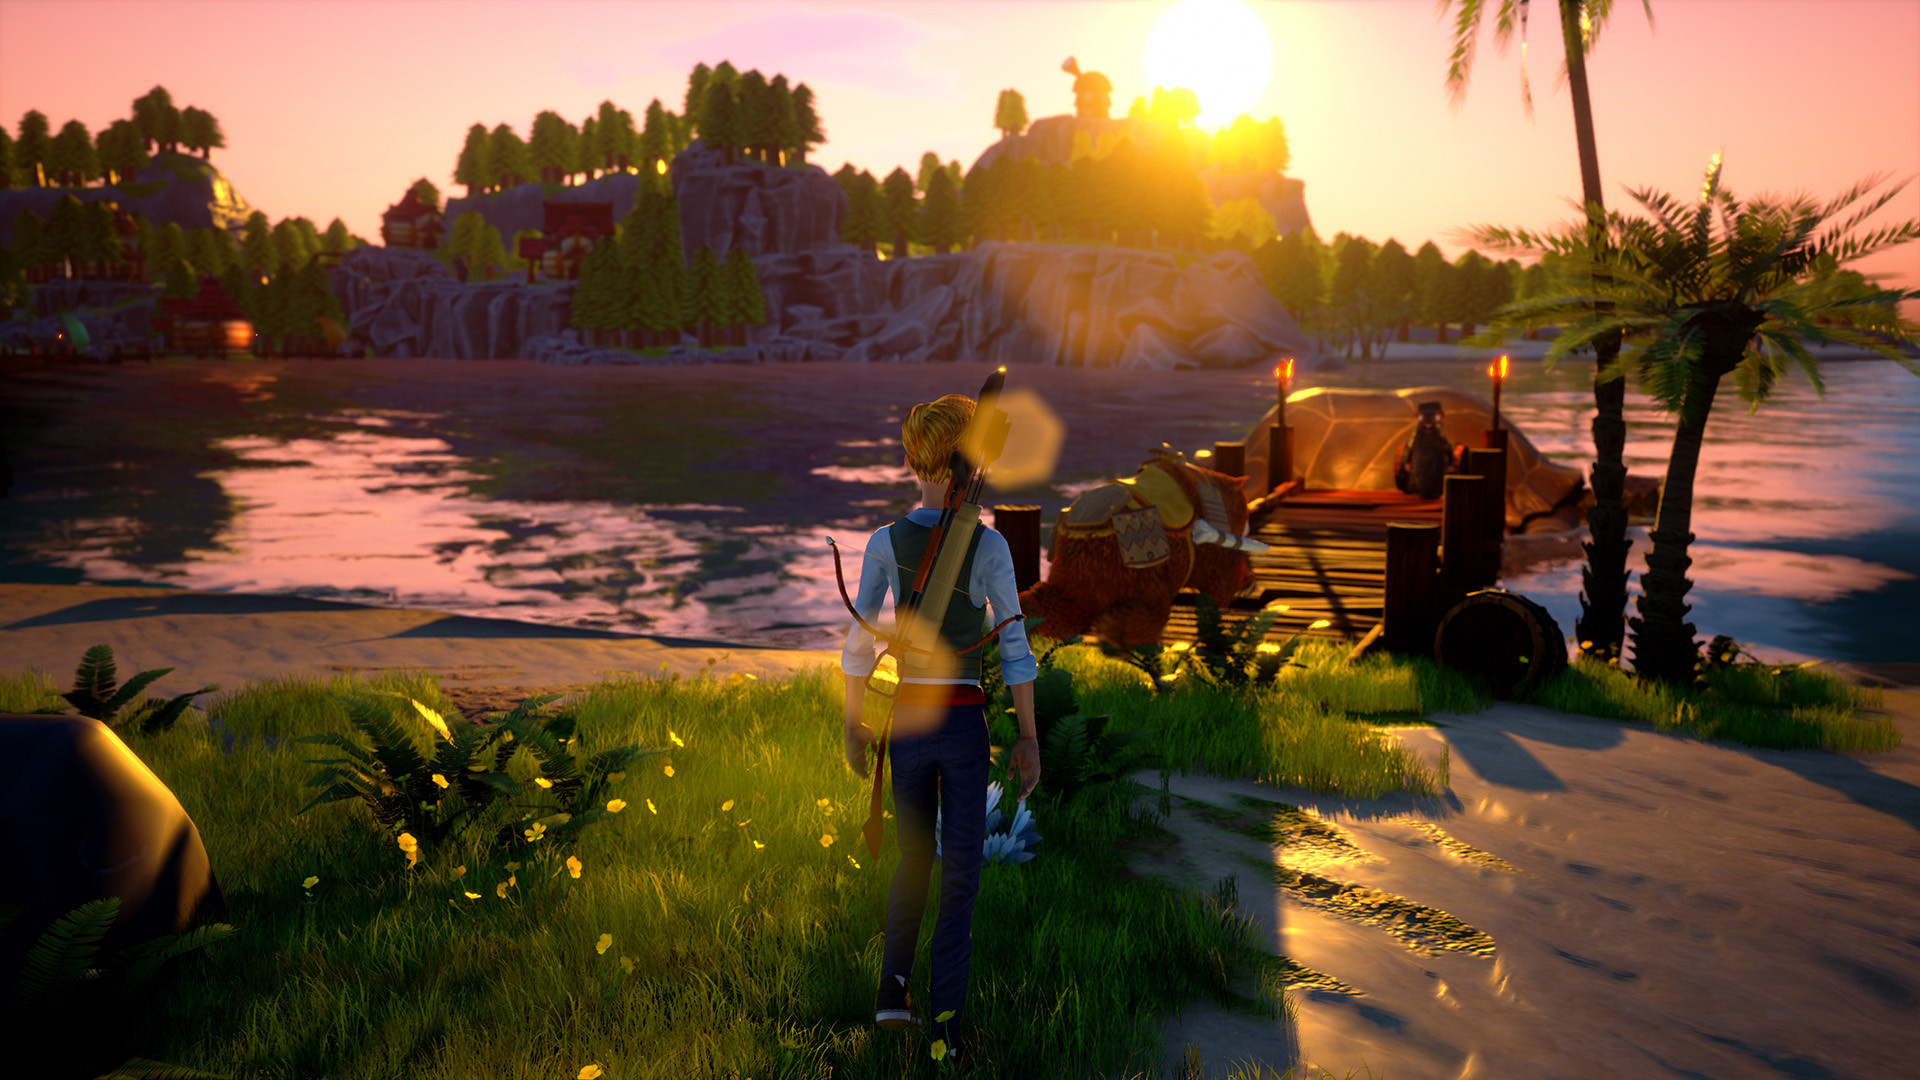 War Islands: A Co-op Adventure screenshot